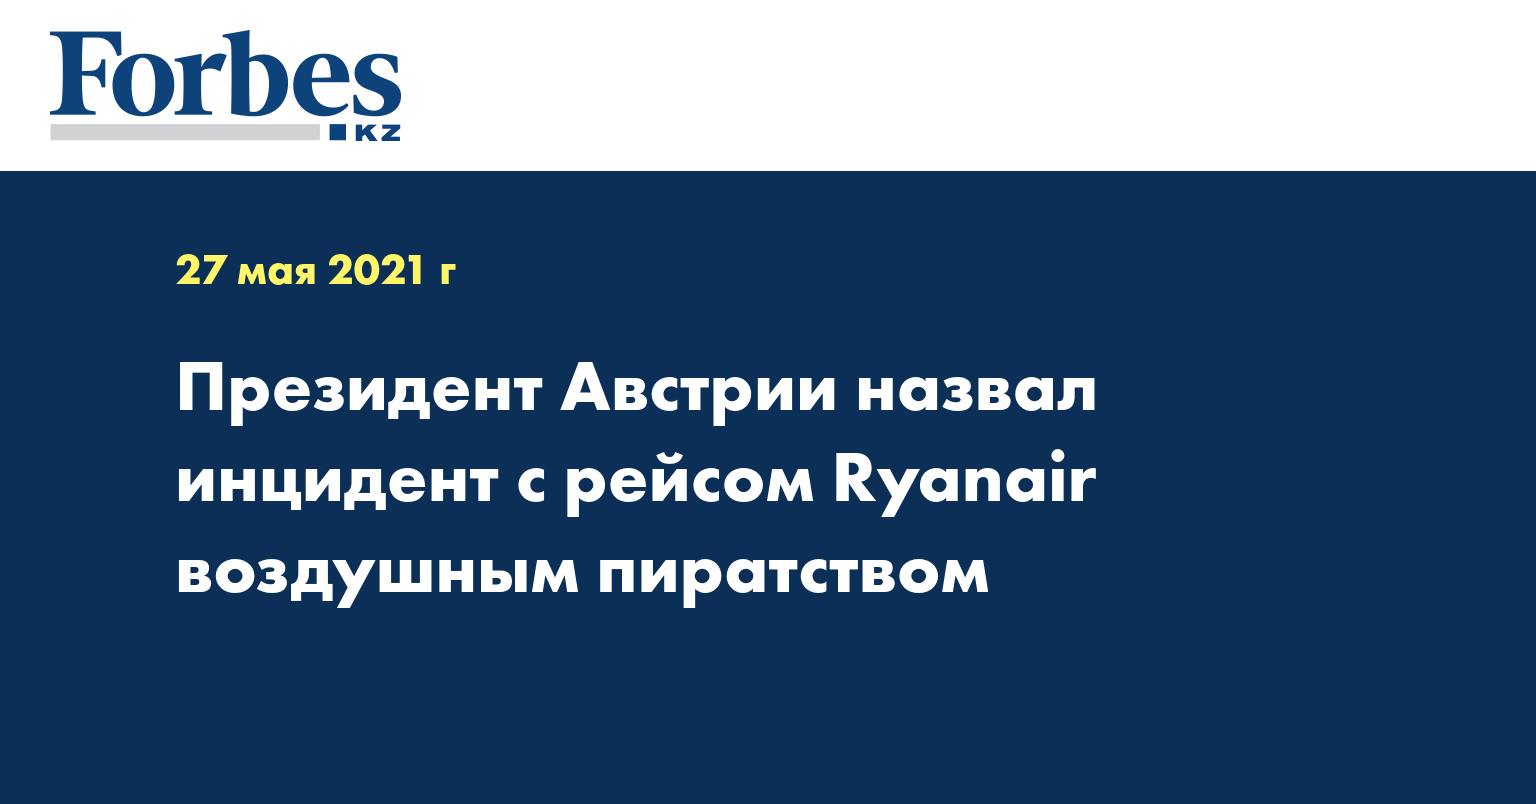 Президент Австрии назвал инцидент с рейсом Ryanair воздушным пиратством